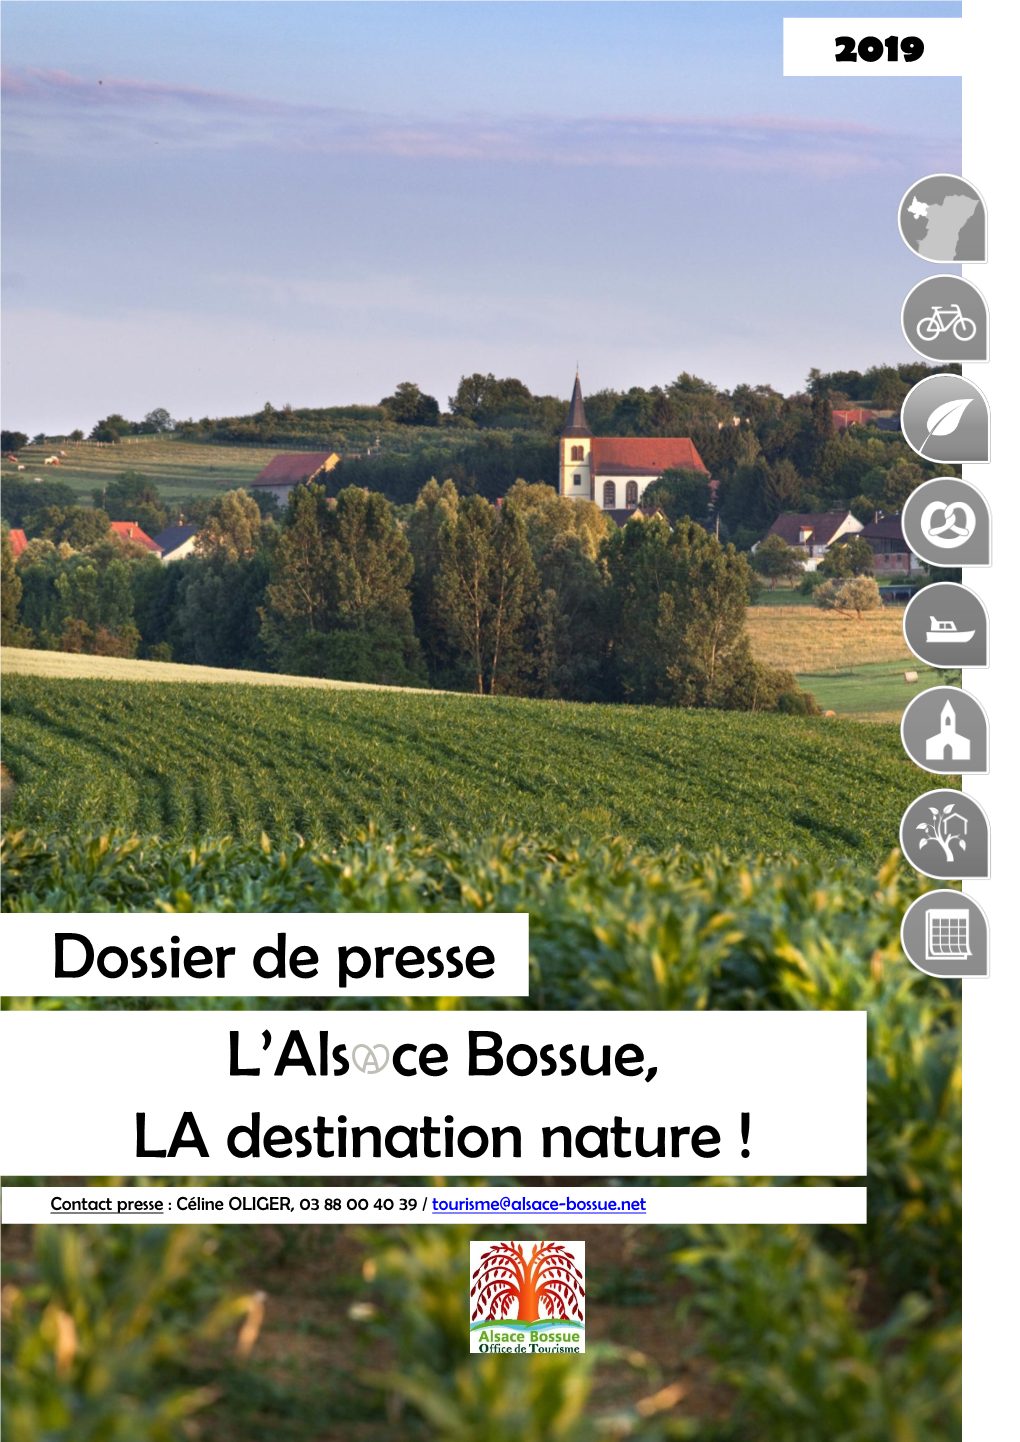 Alsace Bossue, LA Destination Nature / 2019